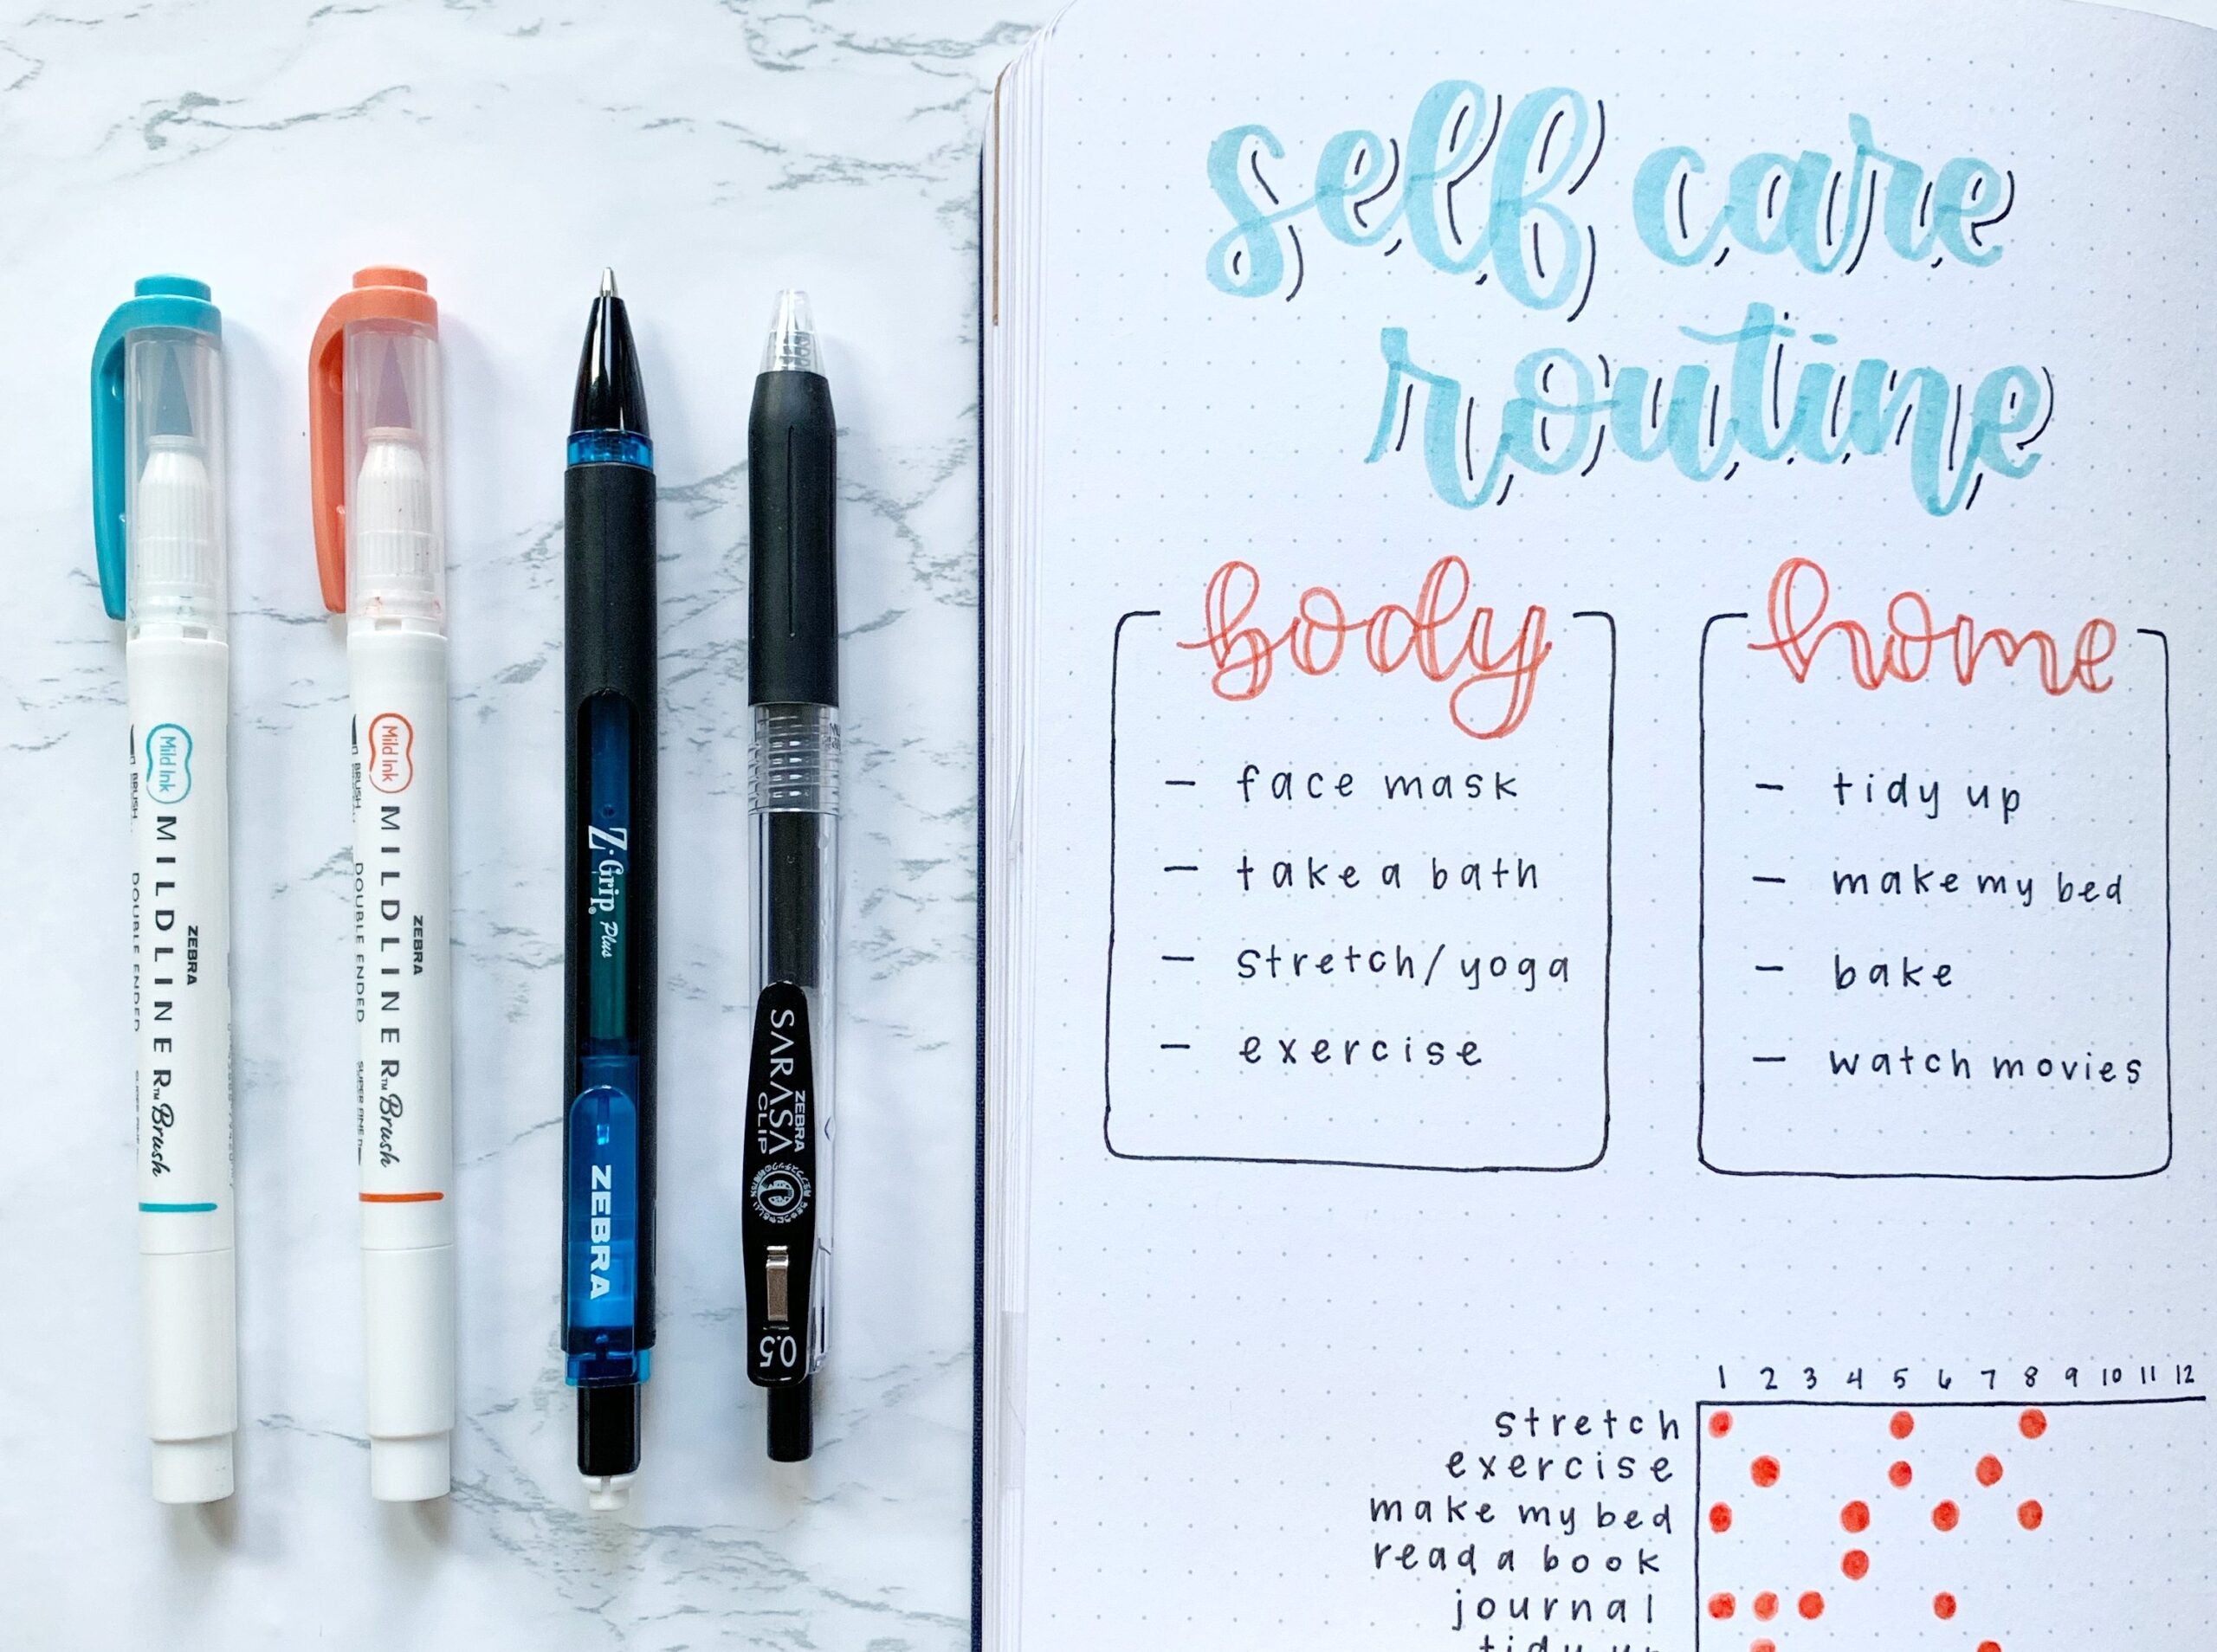 How to Doodle Your Summer Favorites in Your Bullet Journal – Zebra Pen